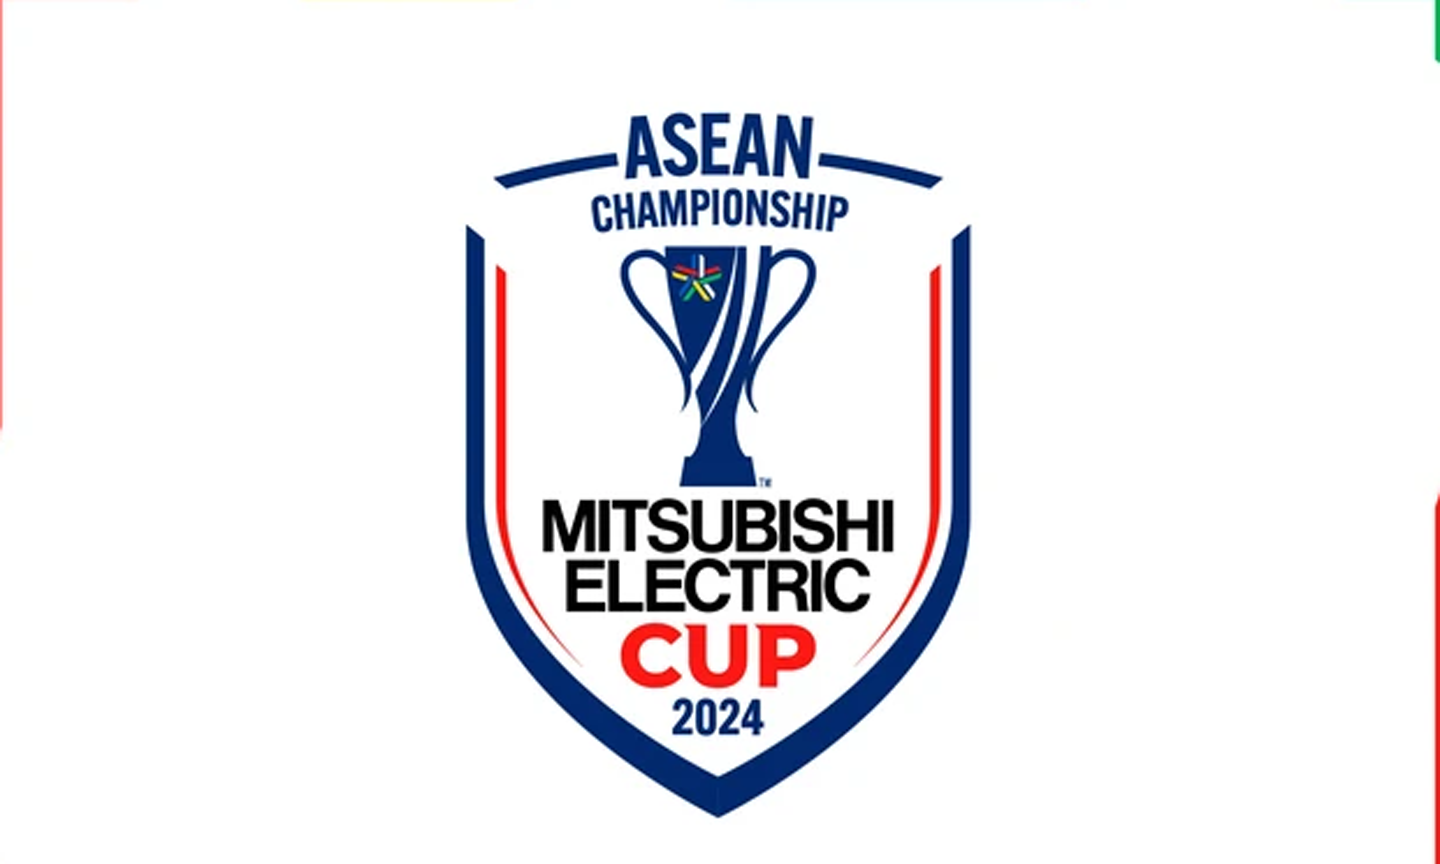 Logo, bộ nhận diện thương hiệu của ASEAN Mitsubishi Electric Cup 2024.